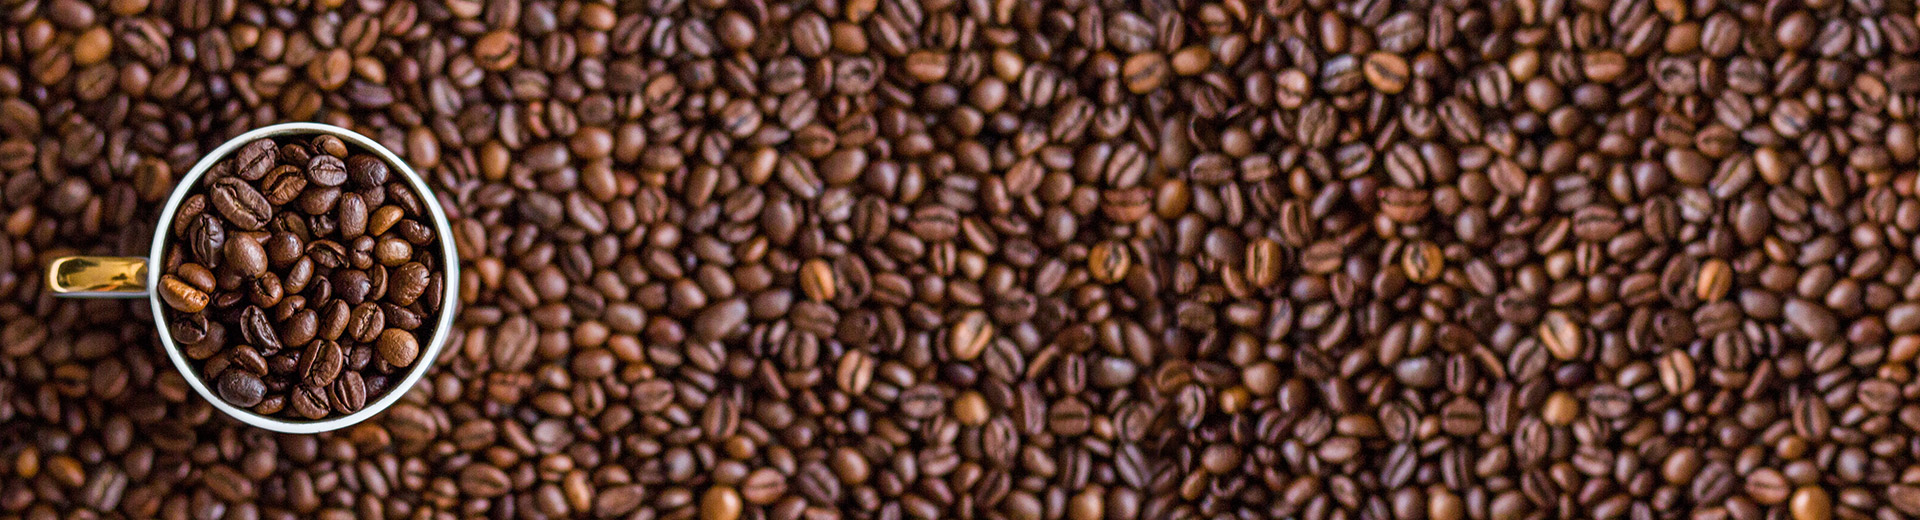 차/음료/커피 :: 커피/차